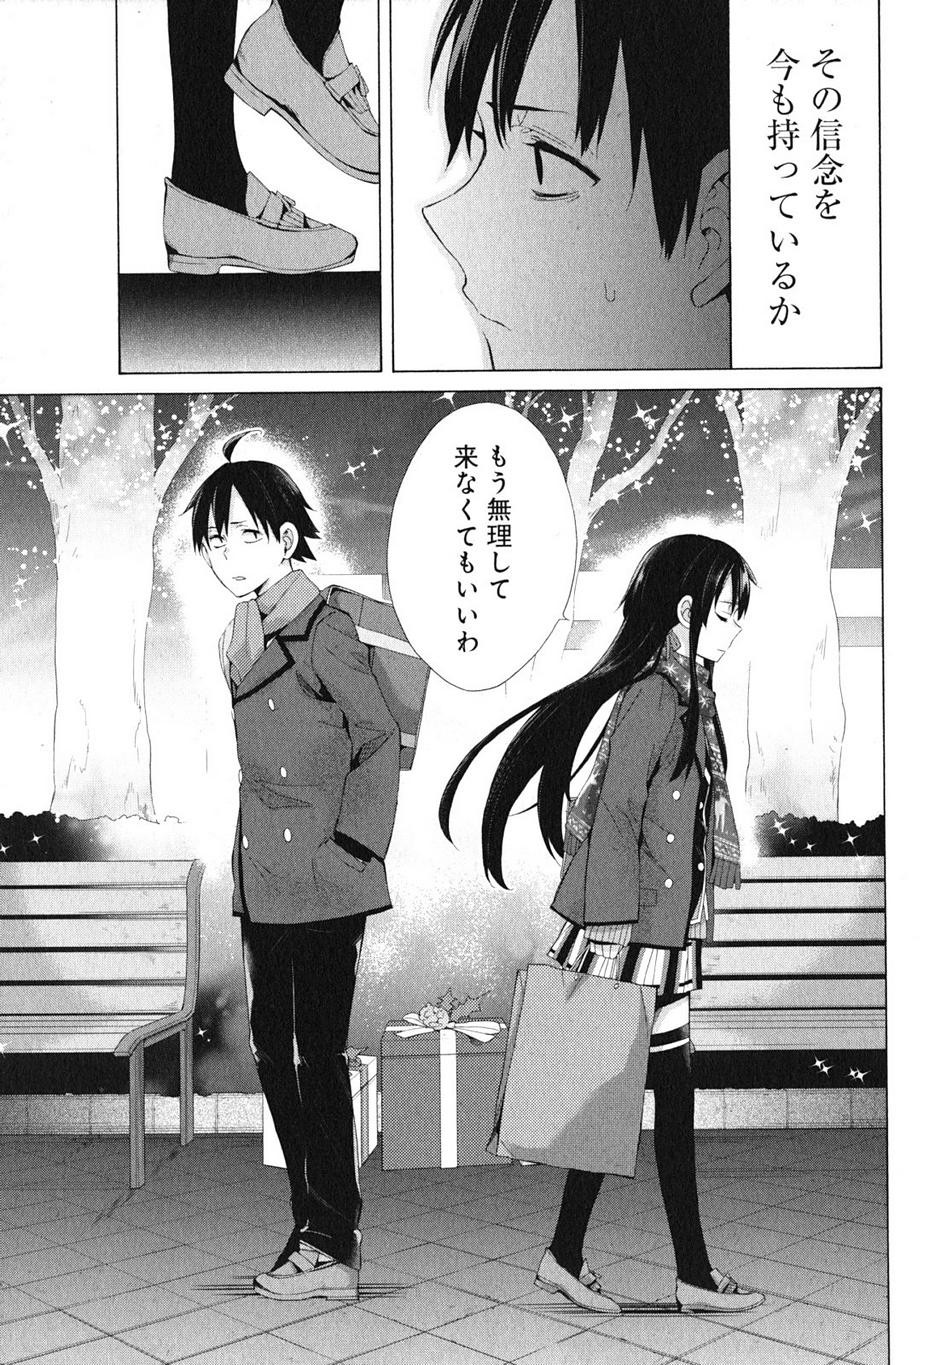 Yahari Ore no Seishun Rabukome wa Machigatte Iru. - Monologue - Chapter 38 - Page 16